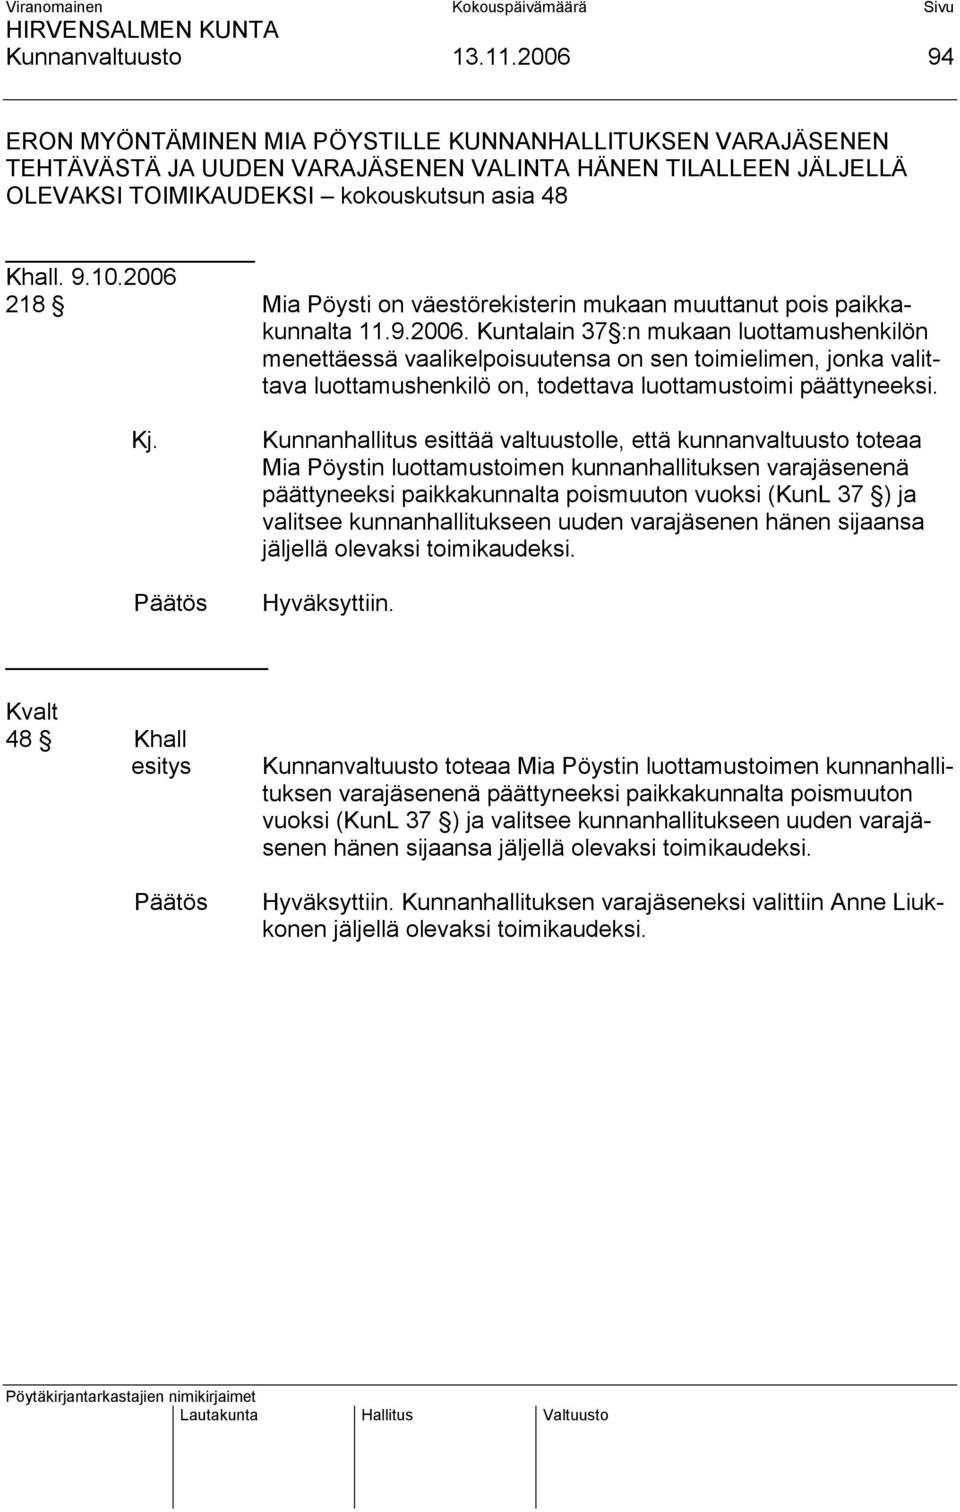 2006 218 Mia Pöysti on väestörekisterin mukaan muuttanut pois paikkakunnalta 11.9.2006. Kuntalain 37 :n mukaan luottamushenkilön menettäessä vaalikelpoisuutensa on sen toimielimen, jonka valittava luottamushenkilö on, todettava luottamustoimi päättyneeksi.